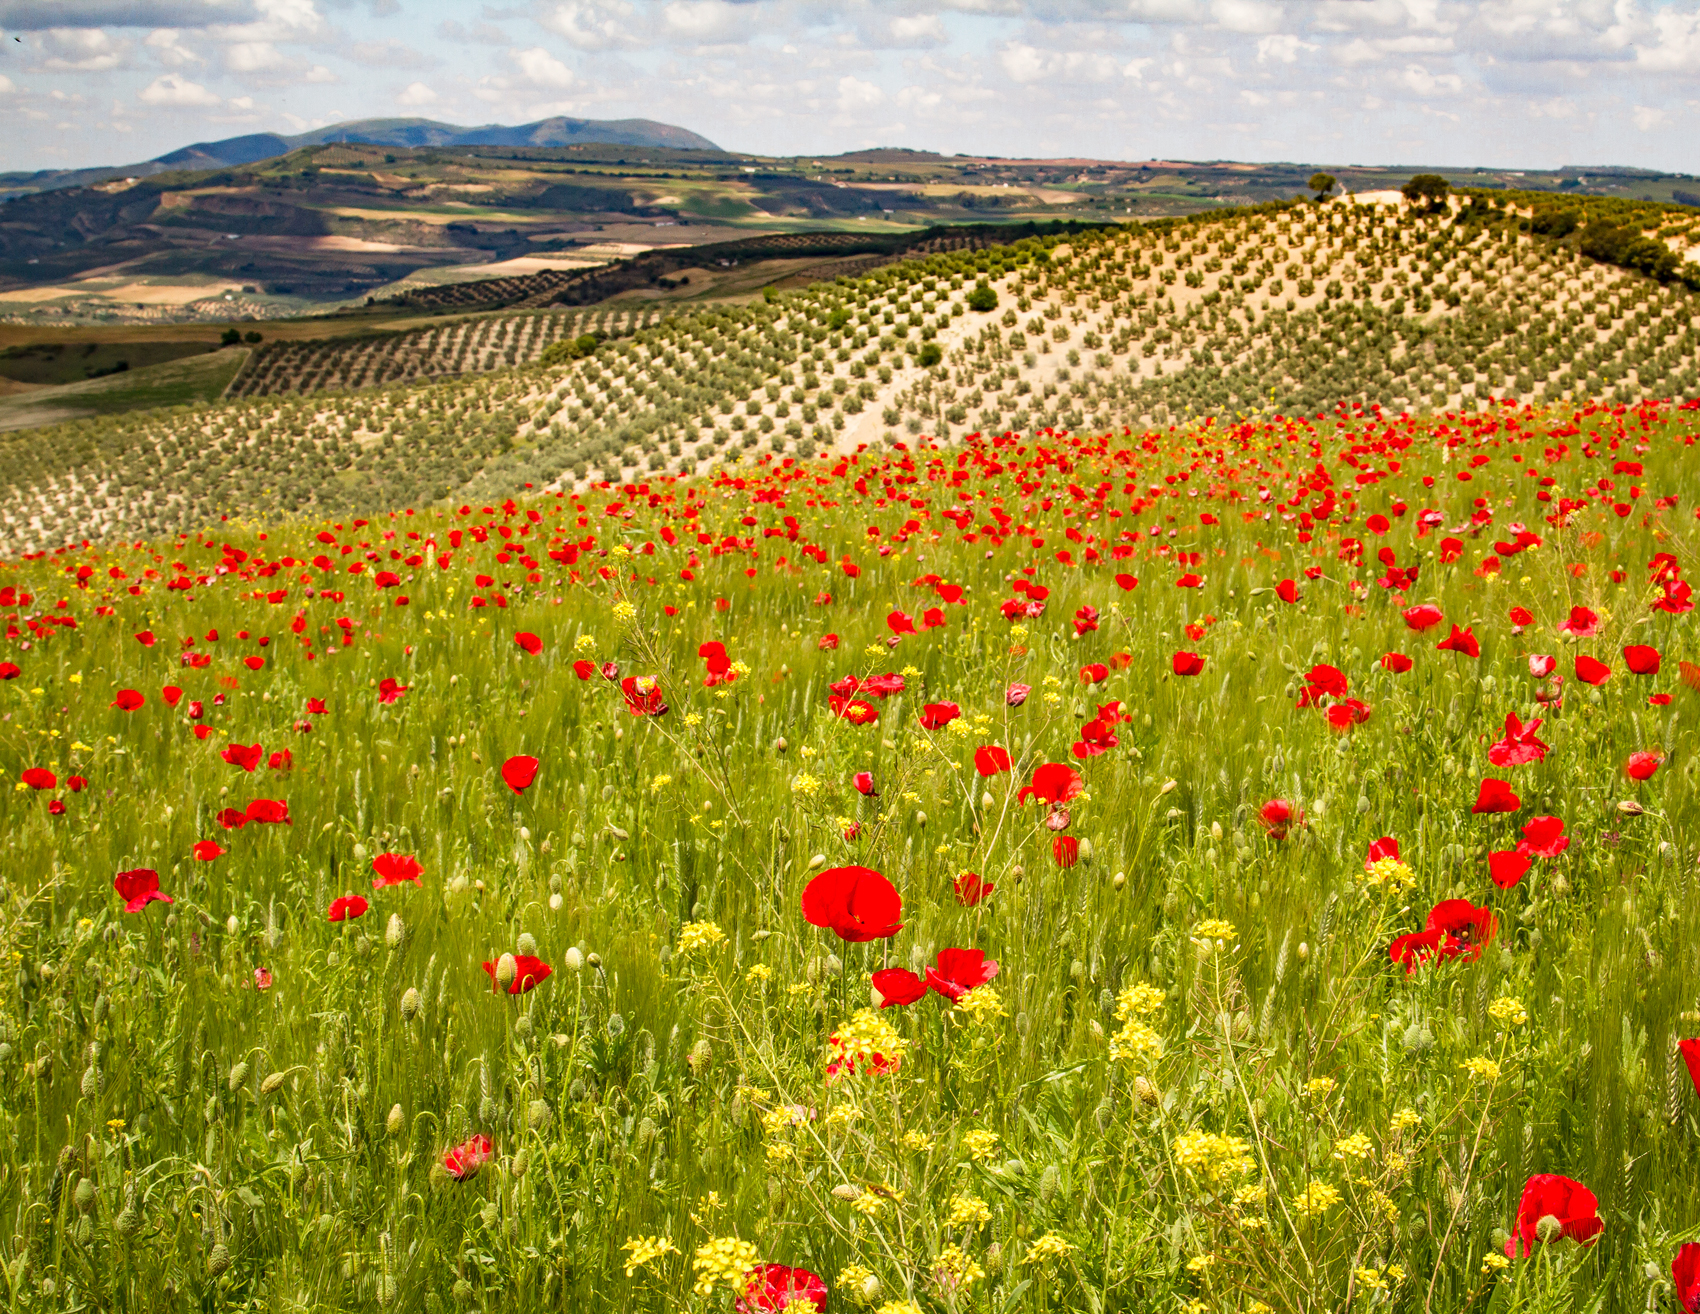 Poppy field in the Sierra Nevada